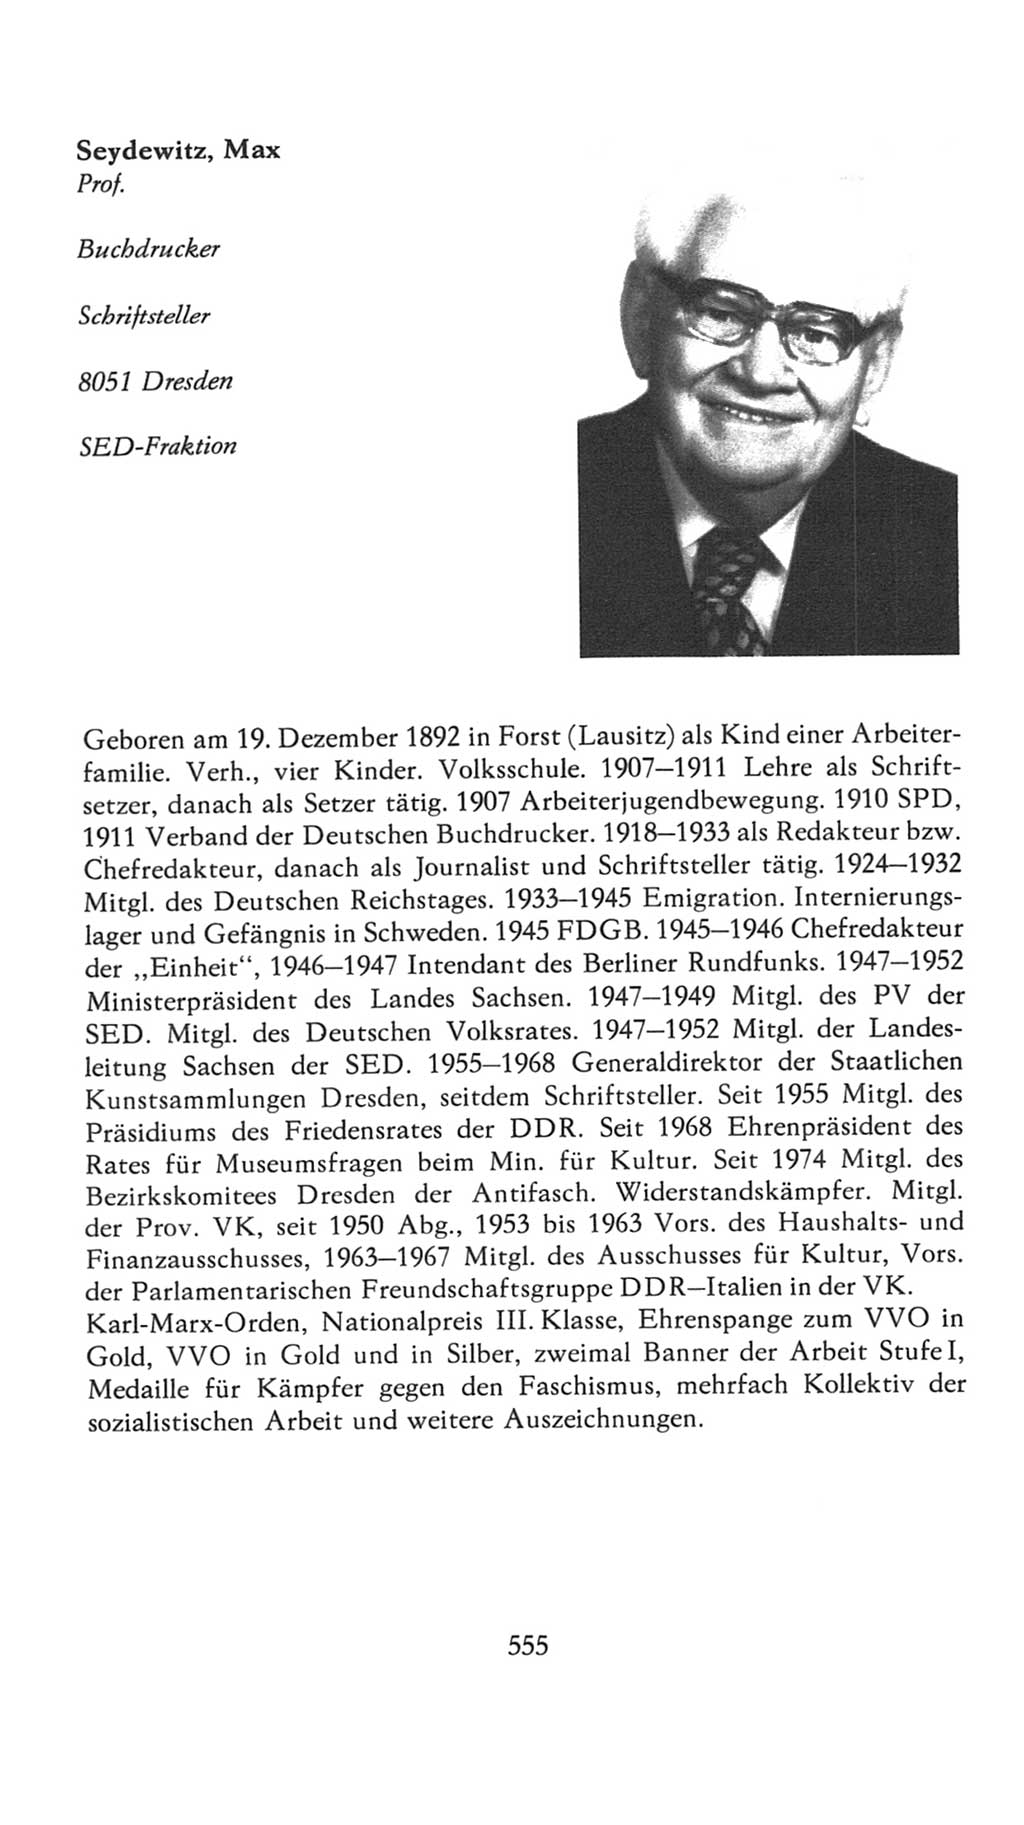 Volkskammer (VK) der Deutschen Demokratischen Republik (DDR), 7. Wahlperiode 1976-1981, Seite 555 (VK. DDR 7. WP. 1976-1981, S. 555)